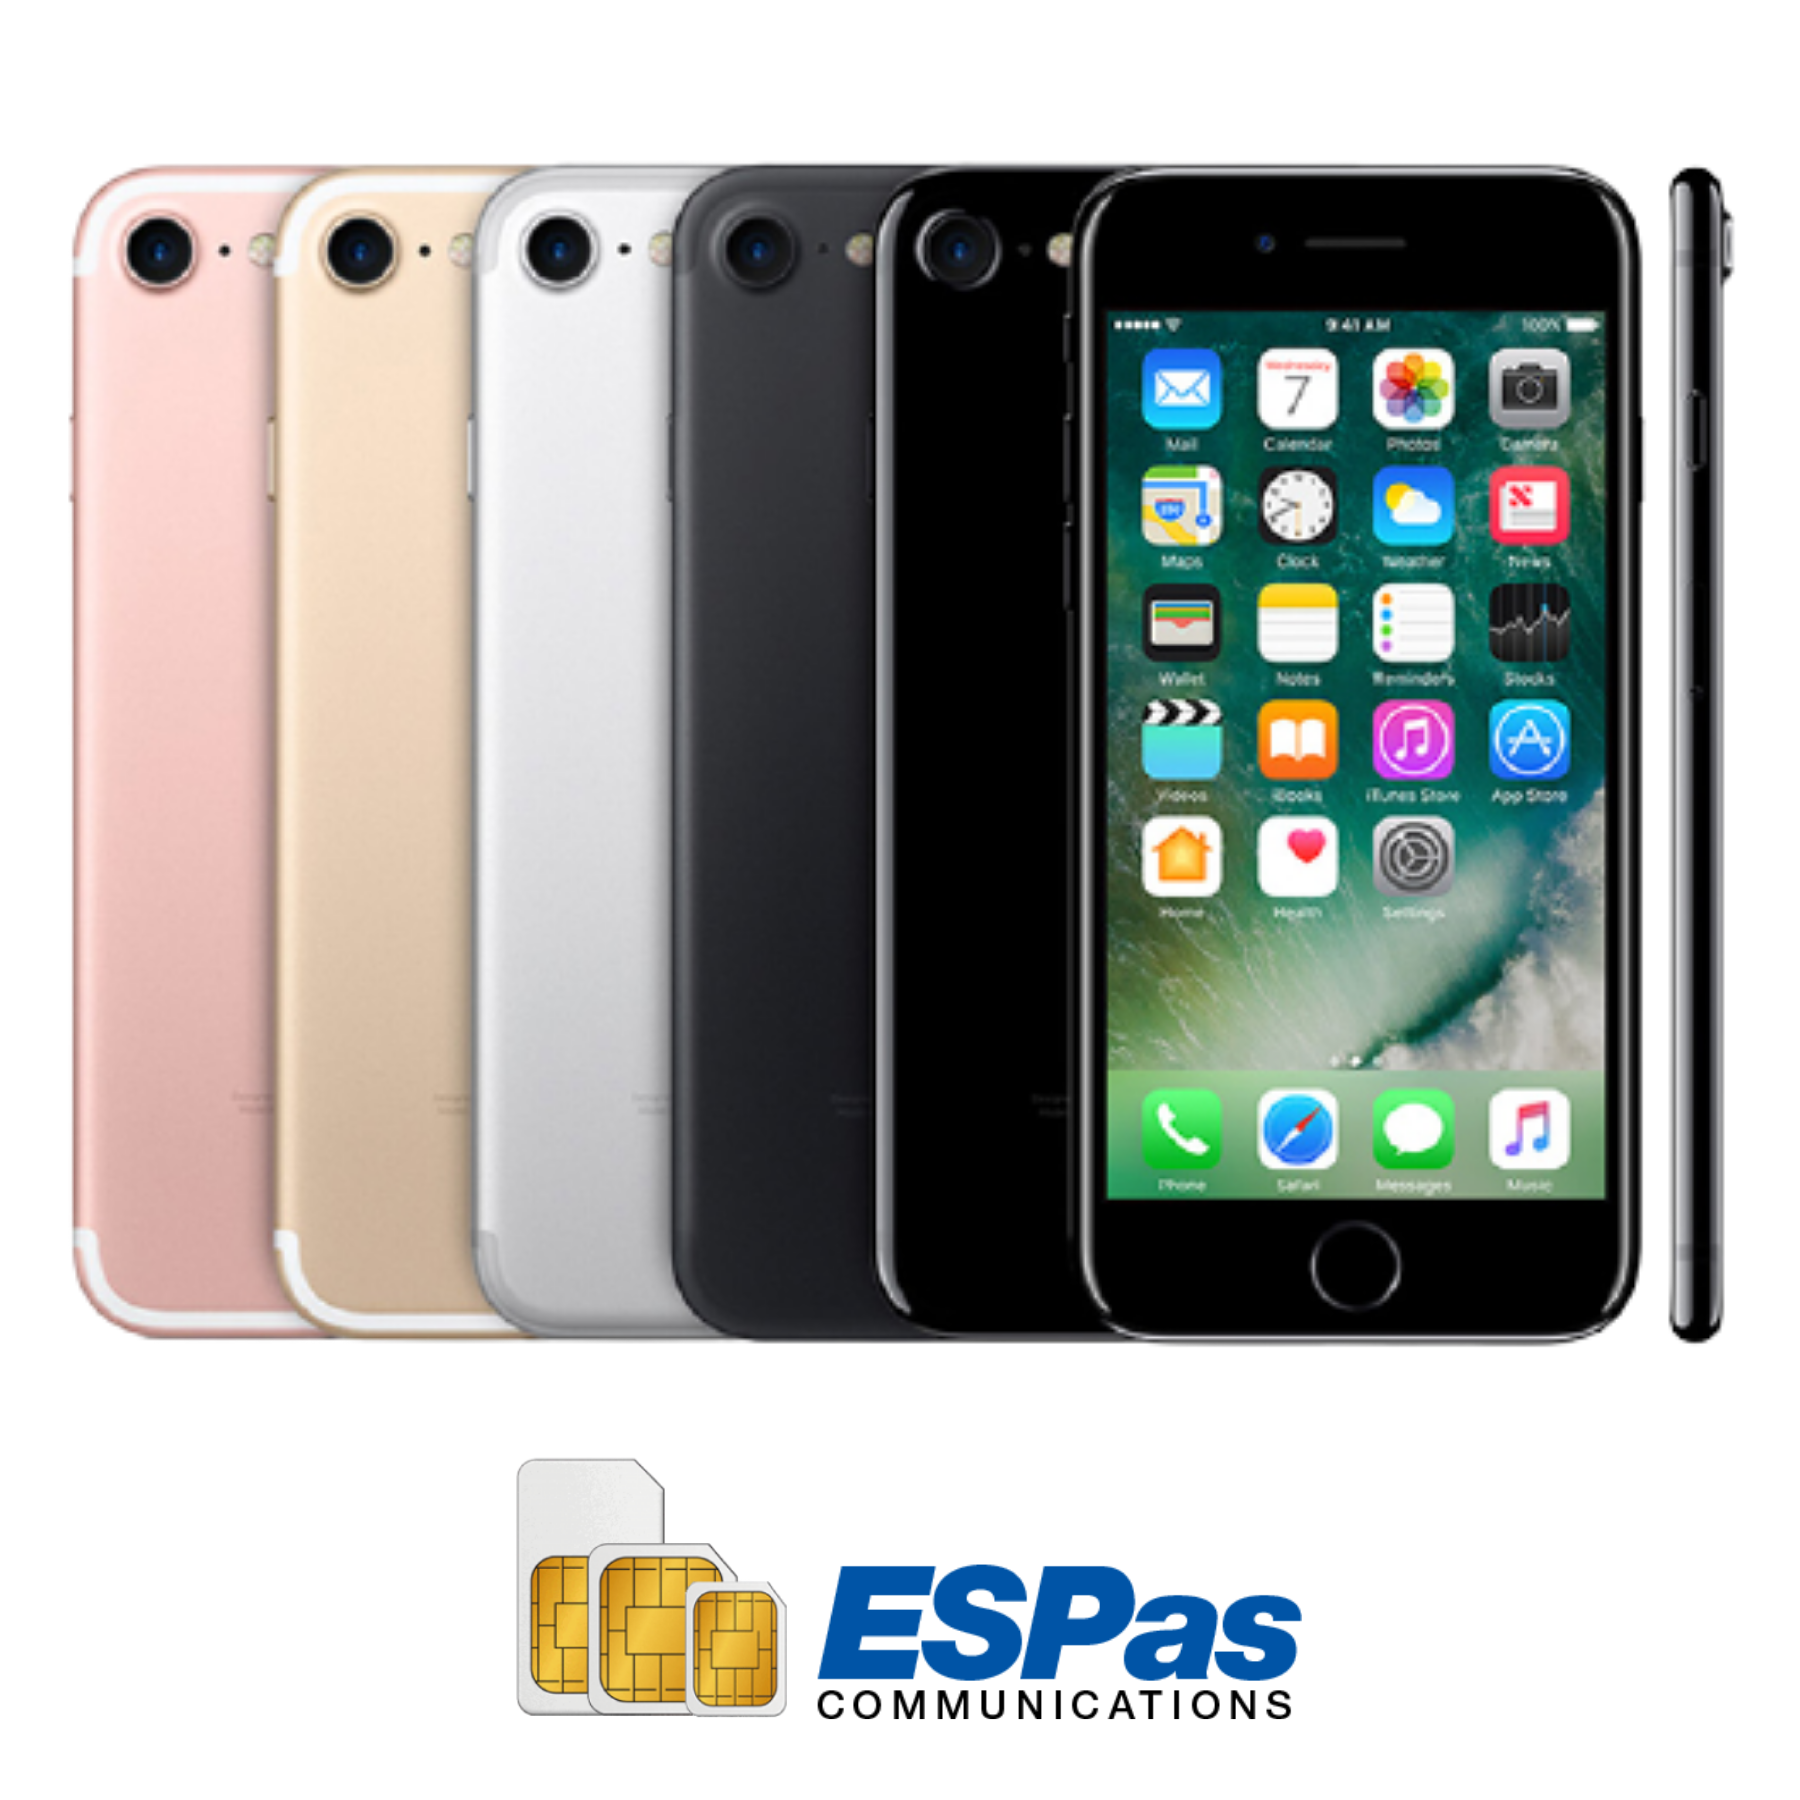 IPhone7+Softbank Voice SIM+50GB Data – Espas.com